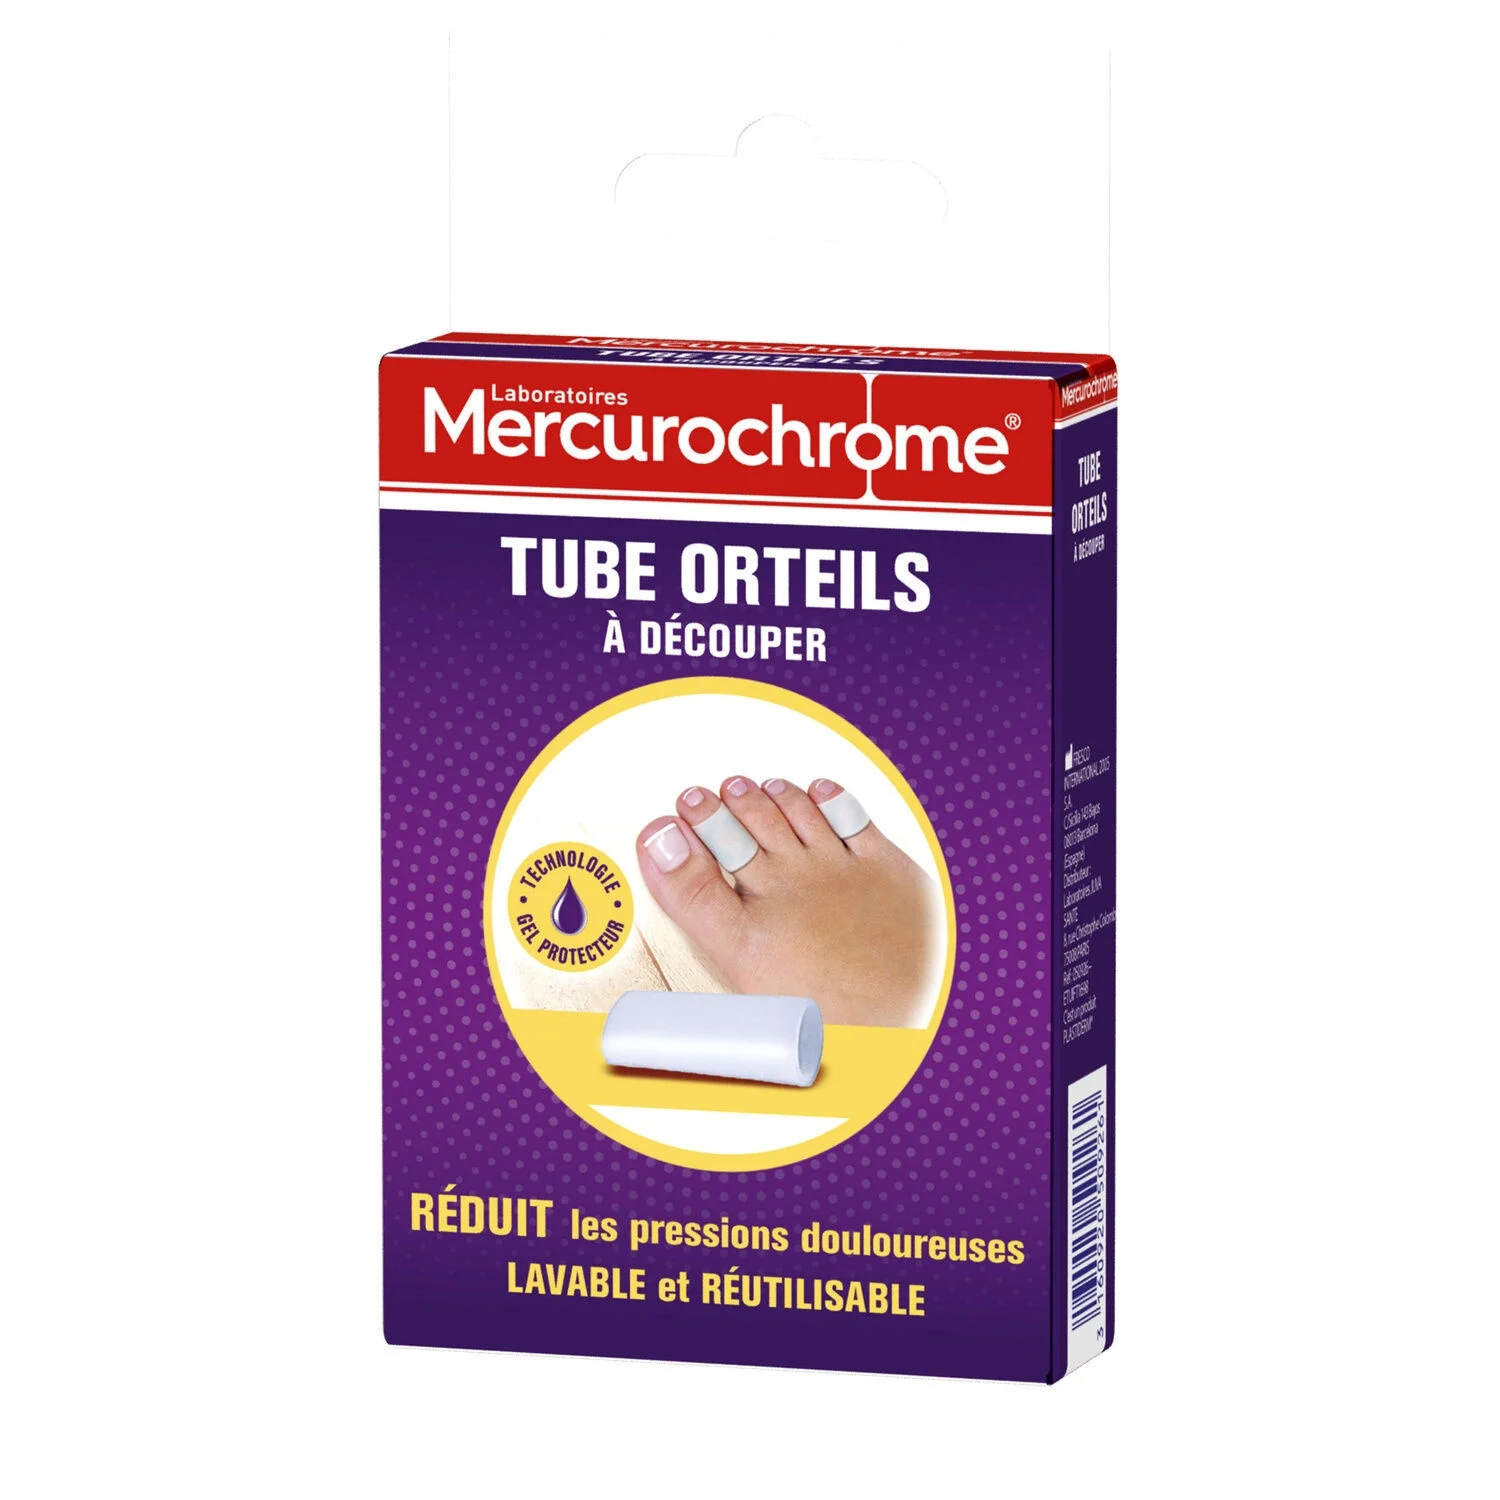 Tubes Orteils Pour Les Cors X1 -mercurochrome